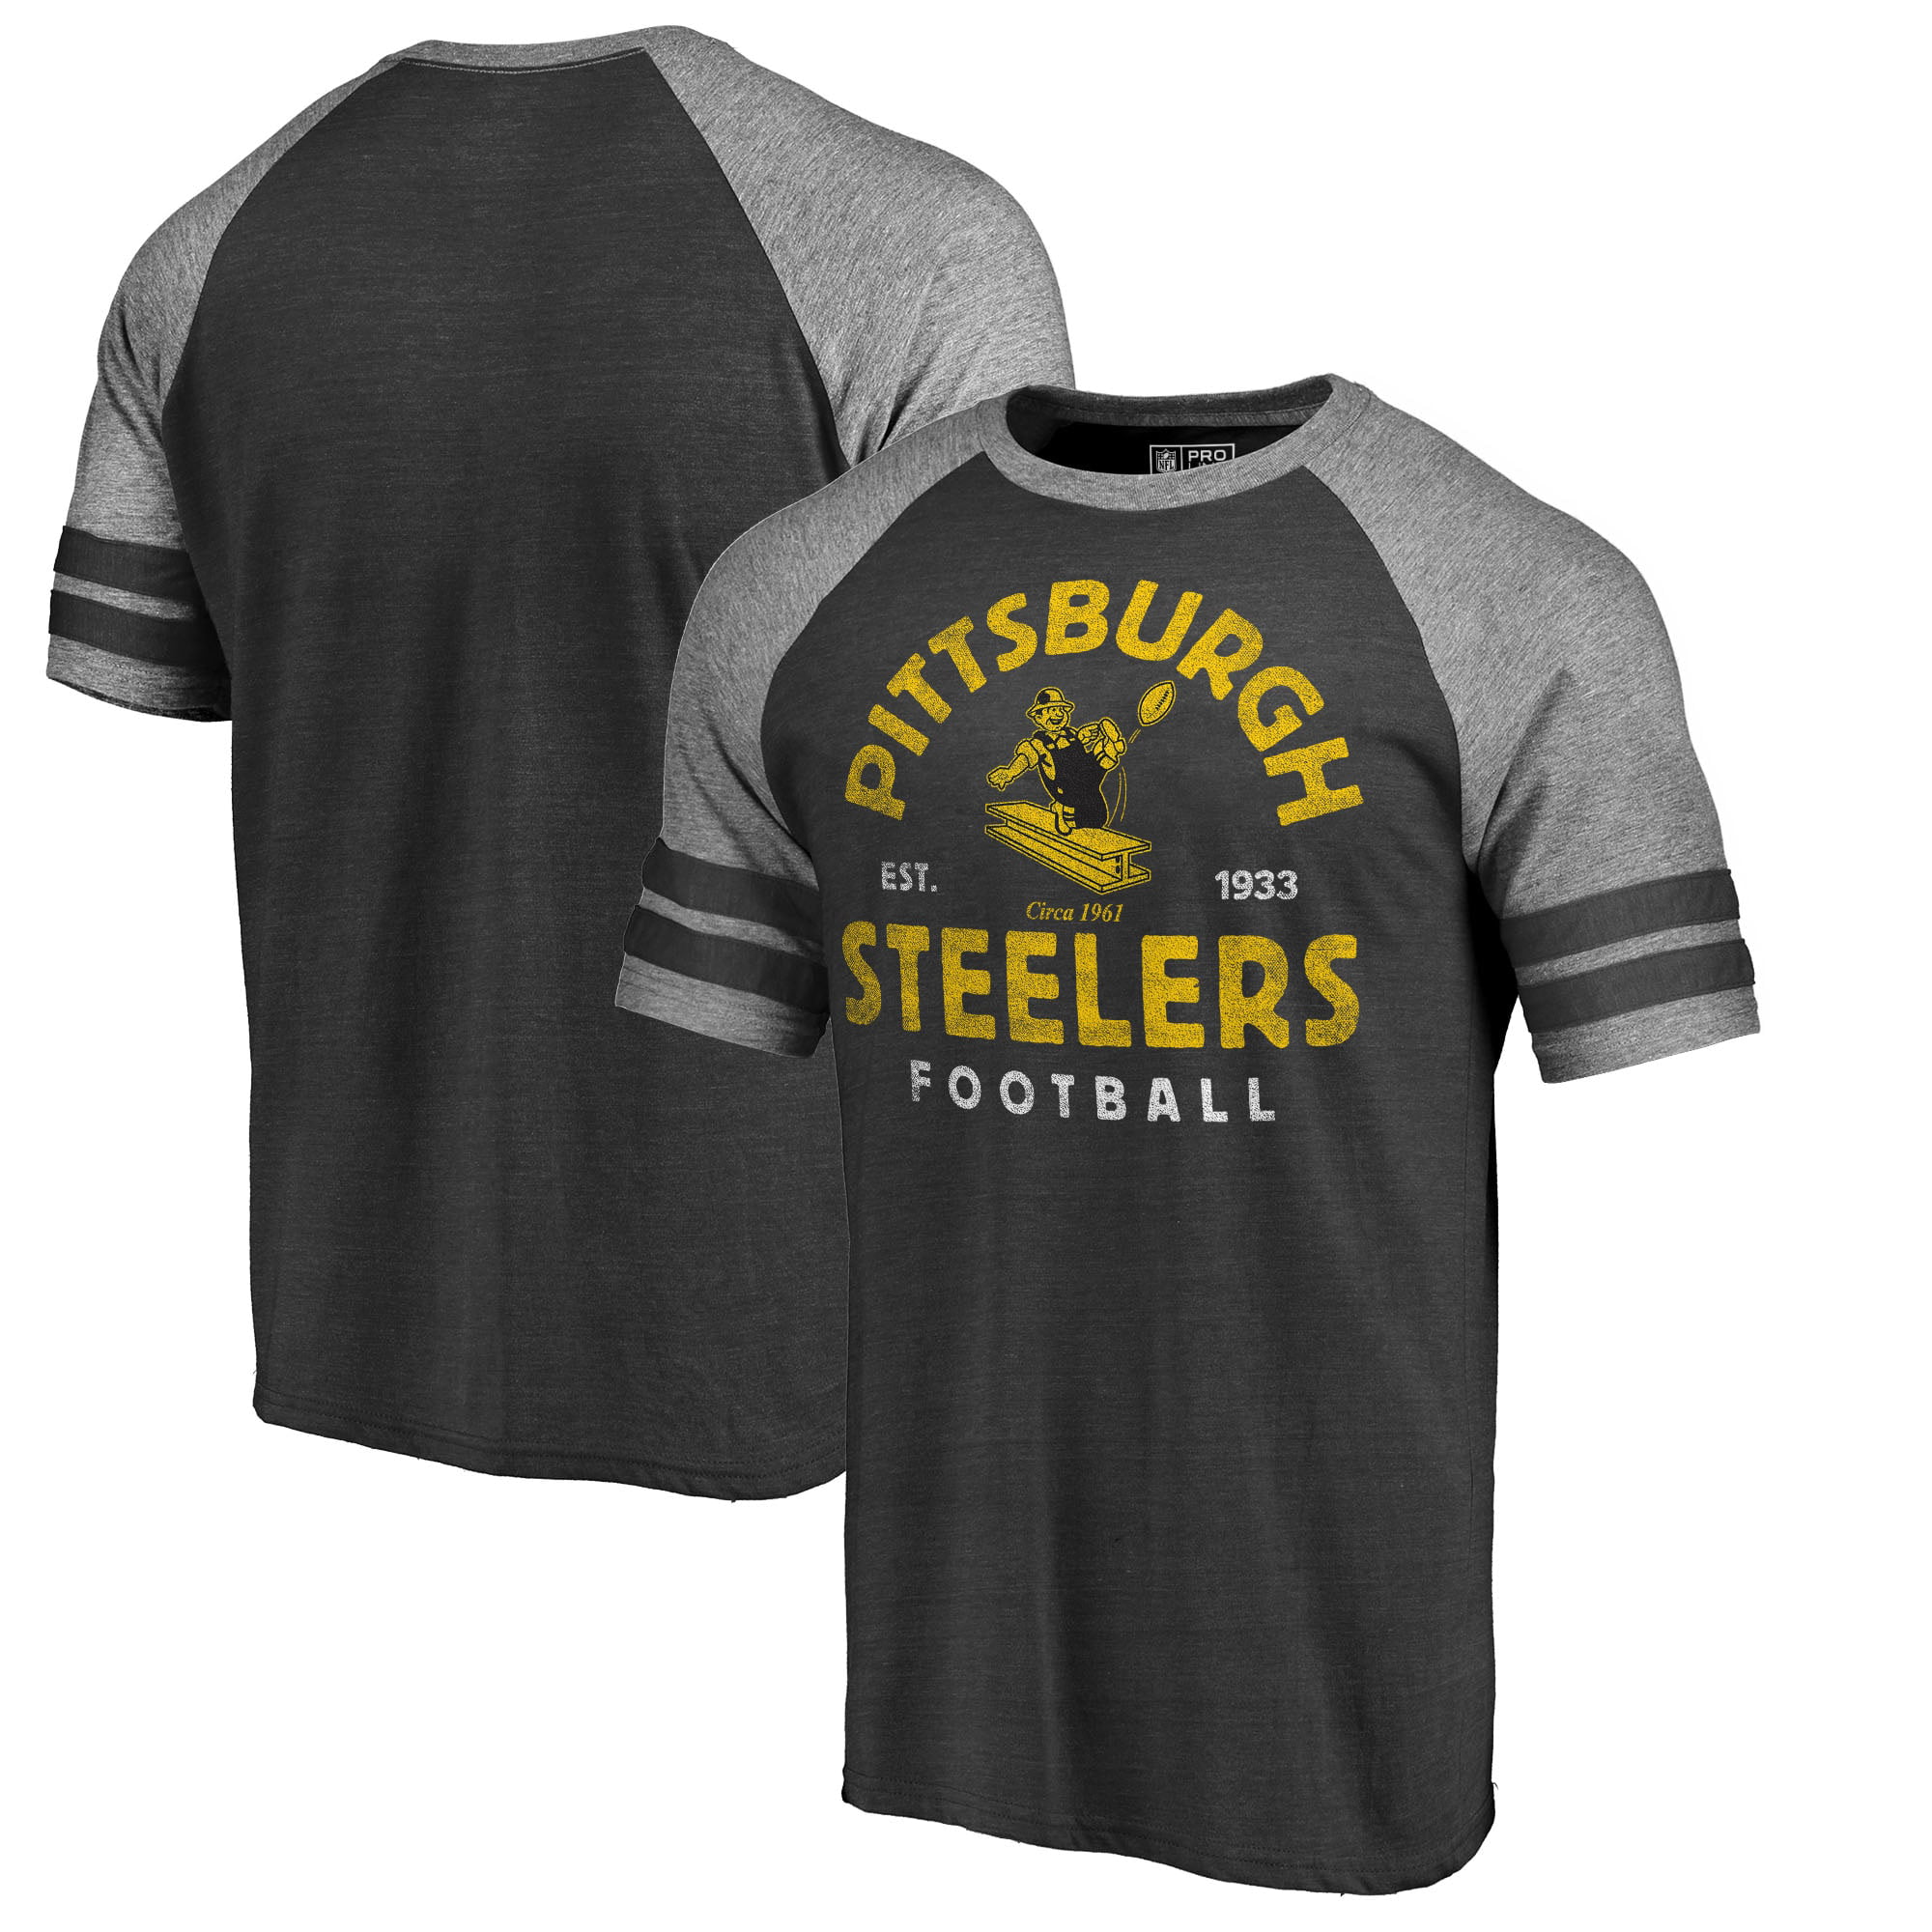 الصقر الامريكي Men's NFL Pro Line by Fanatics Branded Black Pittsburgh Steelers ... الصقر الامريكي